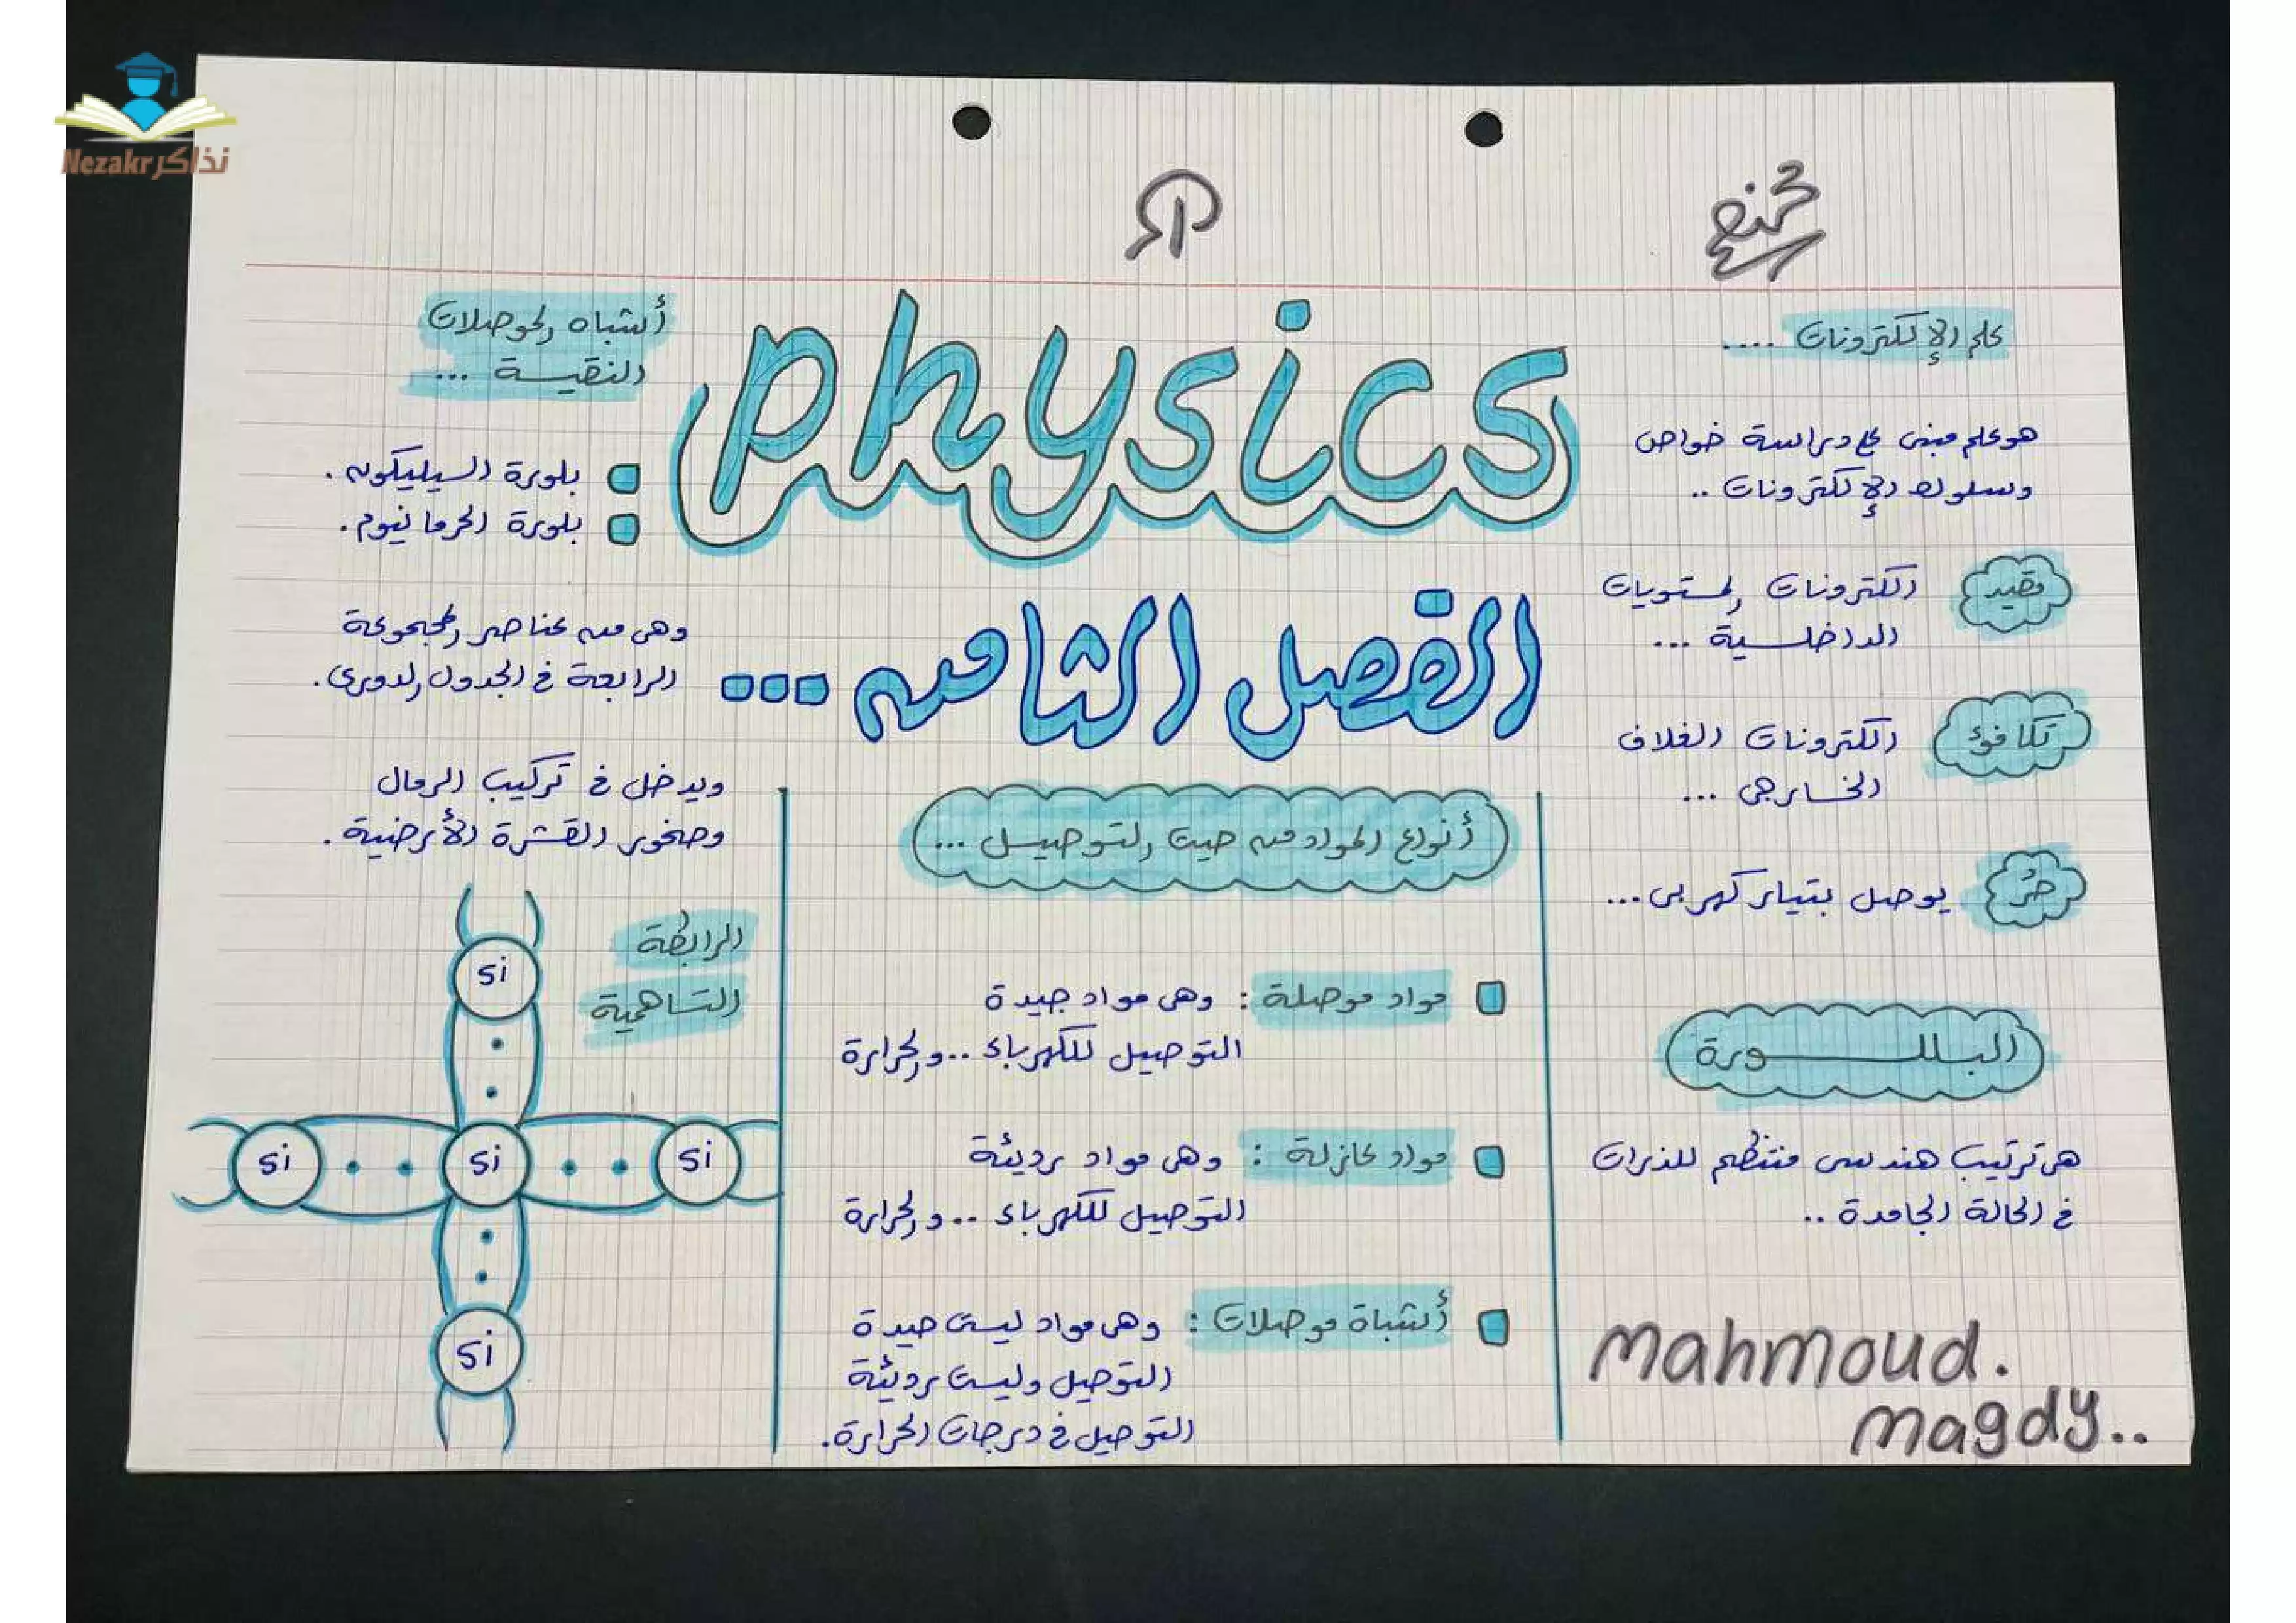 ملخص الفصل الثامن في الفيزياء الحديثة للصف الثالث الثانوي (الالكترونيات الحديثة)